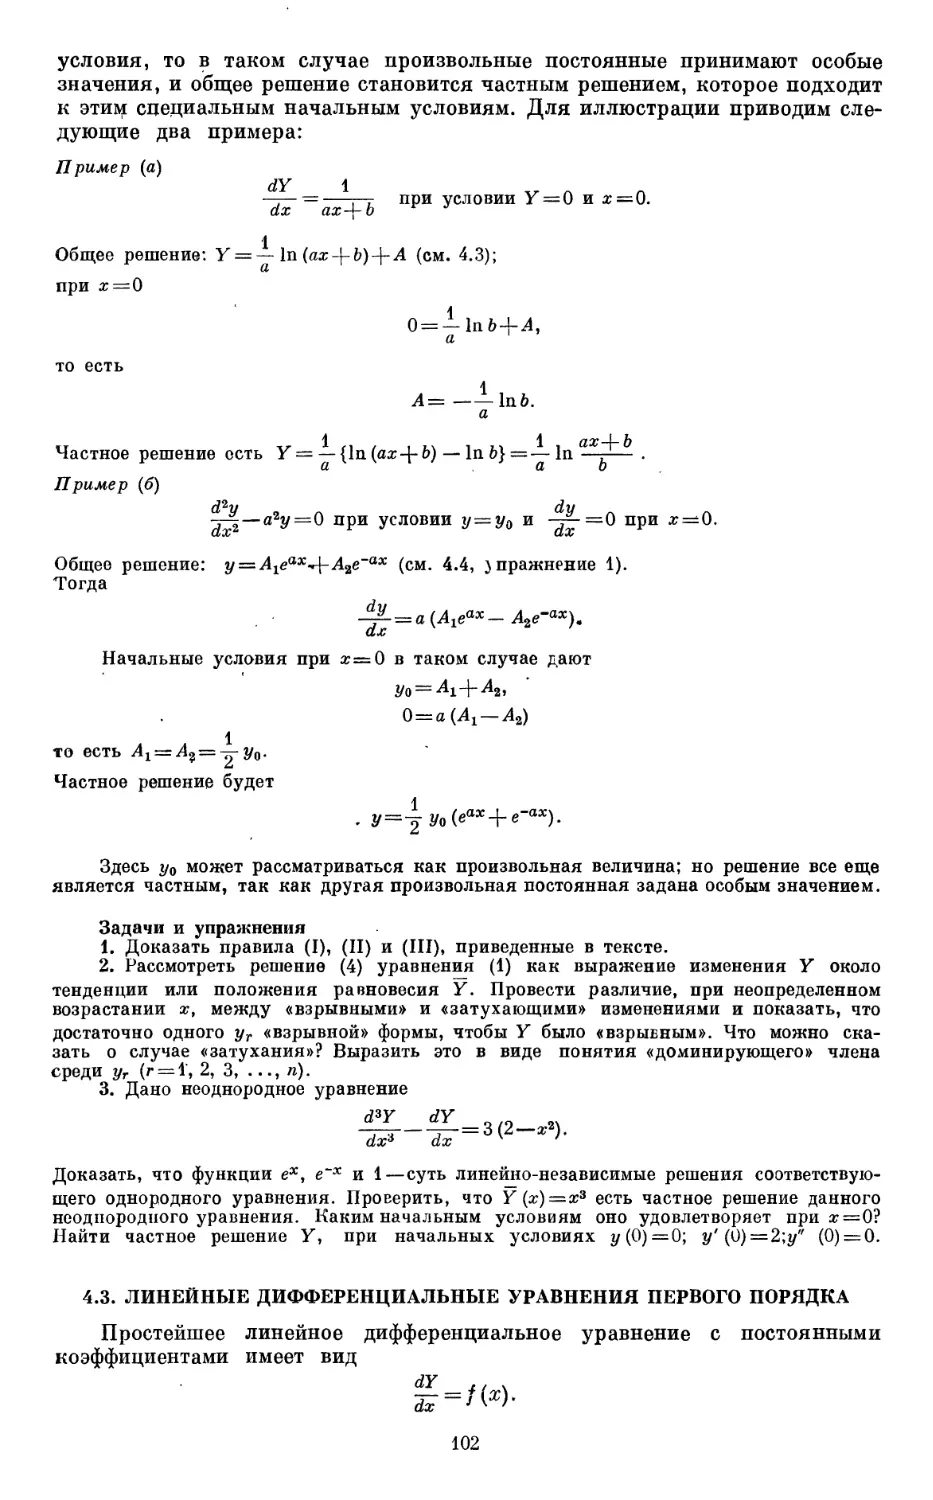 4.3. Линейные дифференциальные уравнения первого порядка